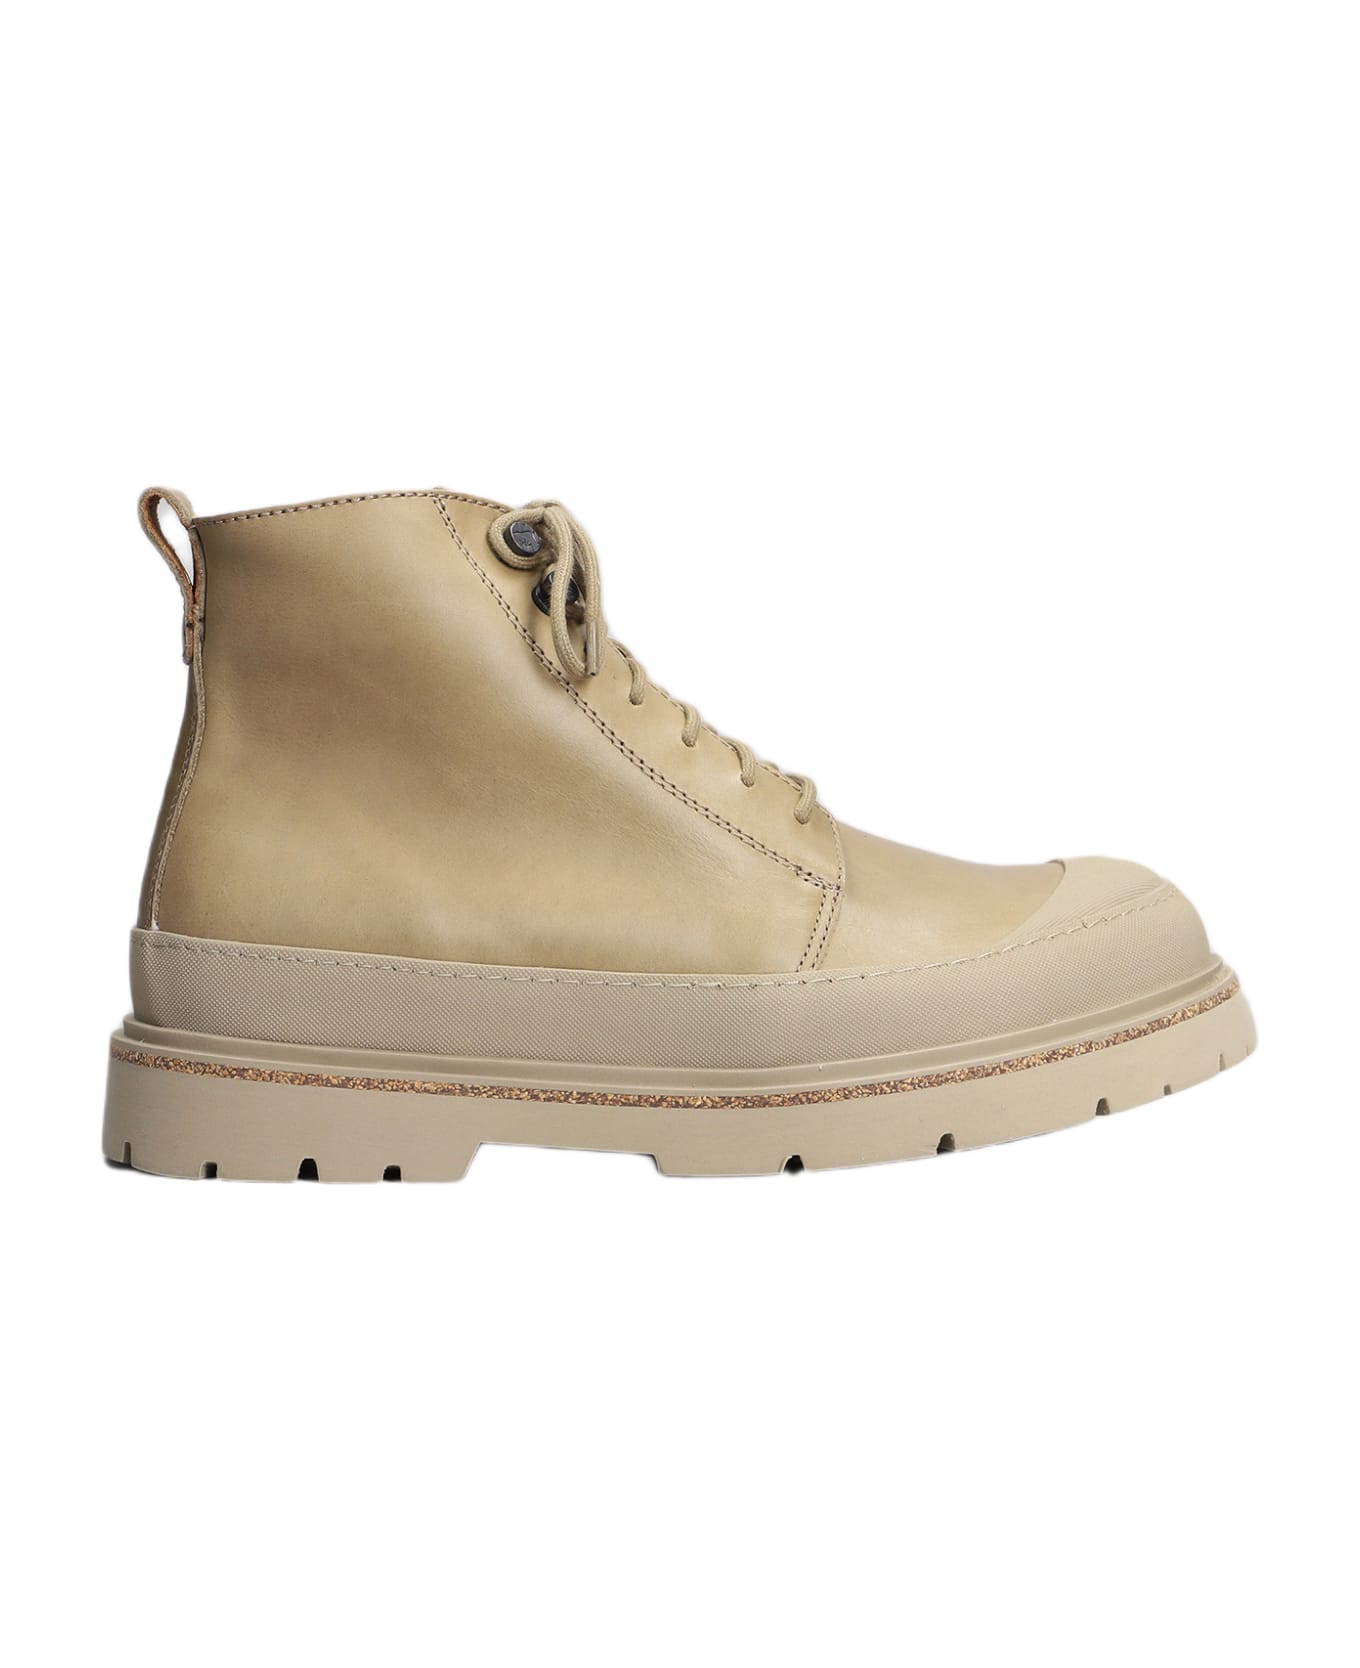 Birkenstock Prescott Combat Boots In Taupe Leather - Nude & Neutrals